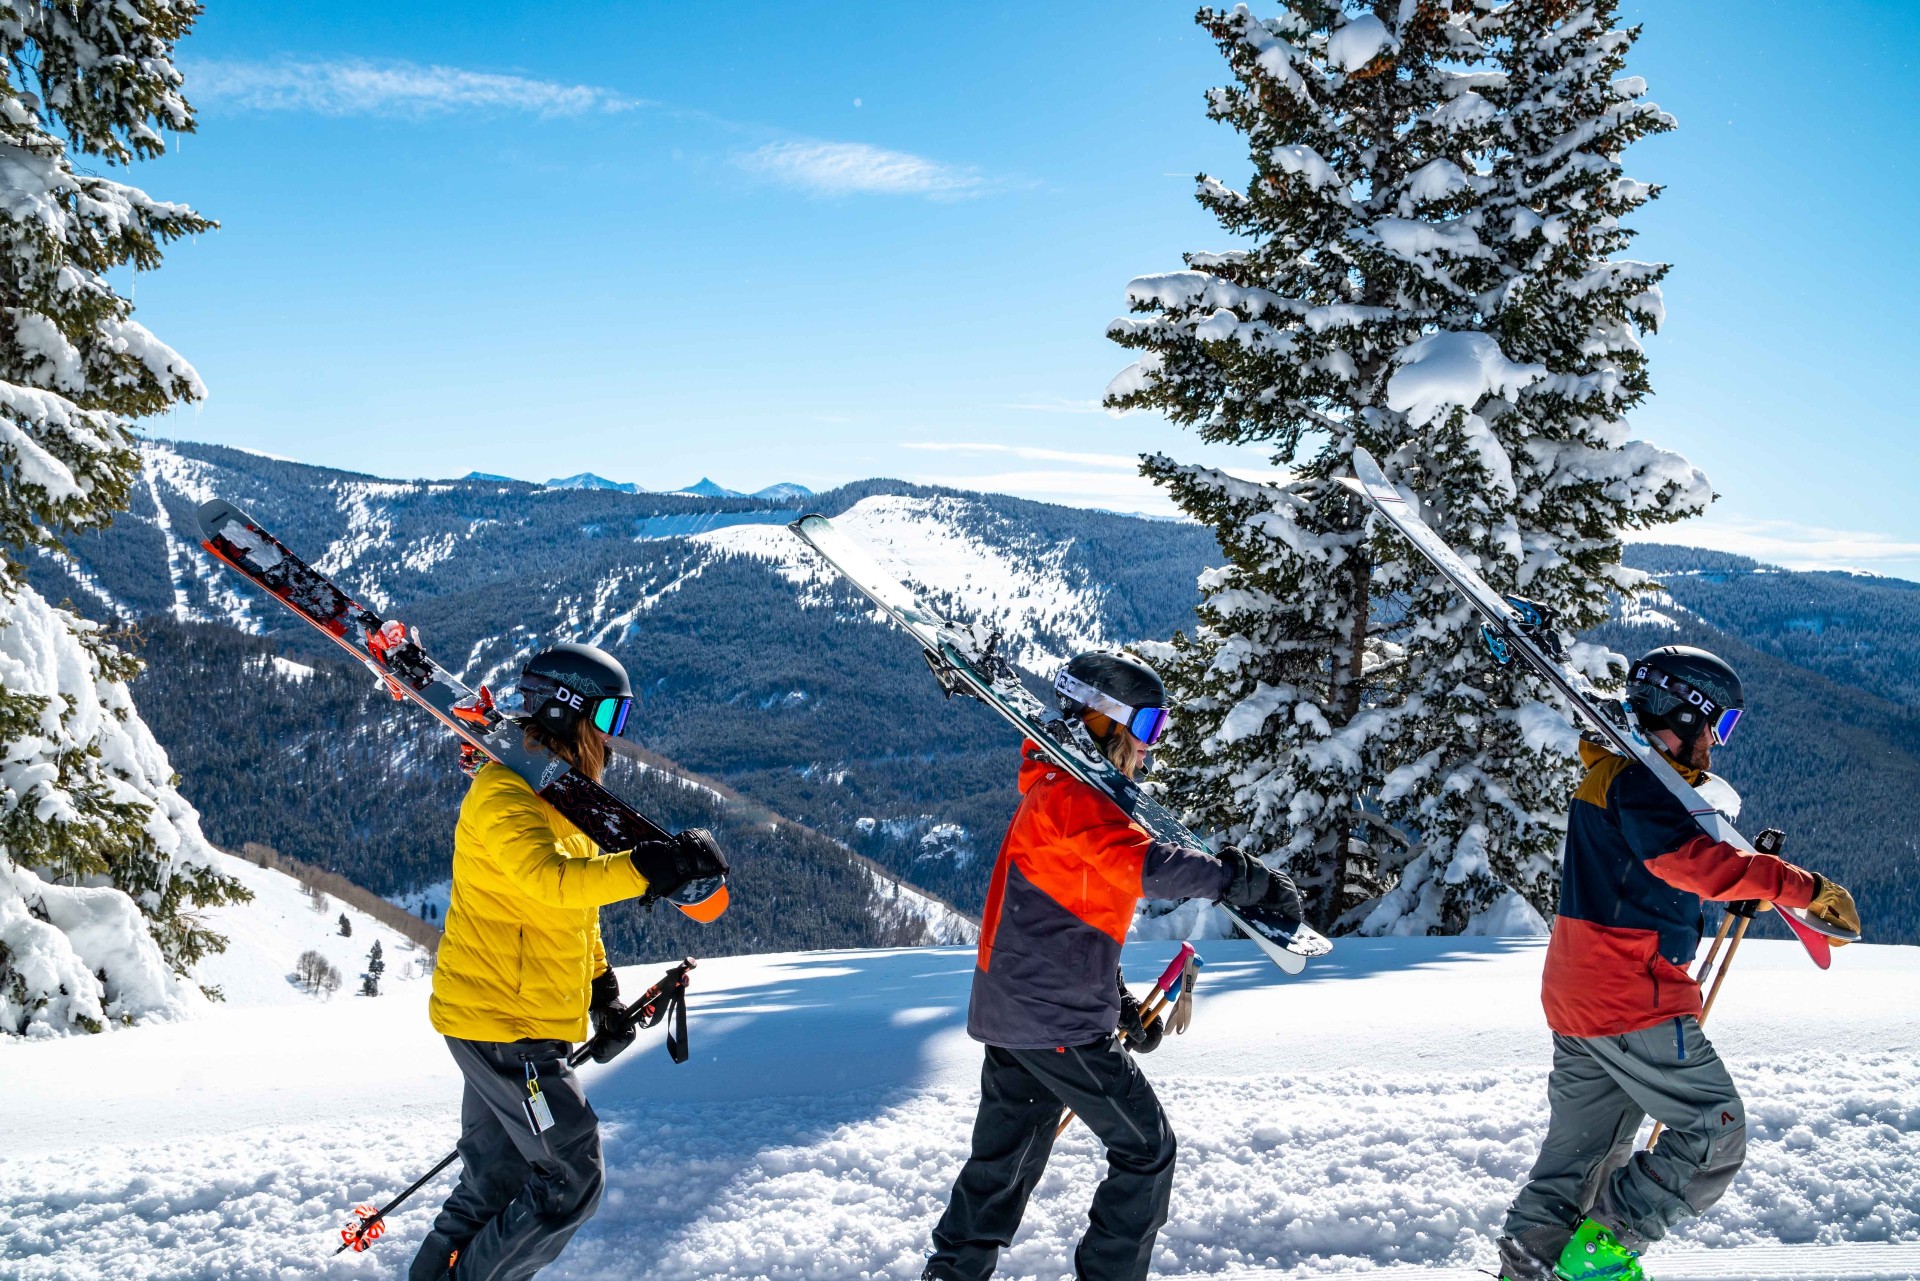 Špeciálnu kategóriu tvoria skialpinistické lyžiarky, ktoré musia byť ľahké a pohodlné pri chôdzi